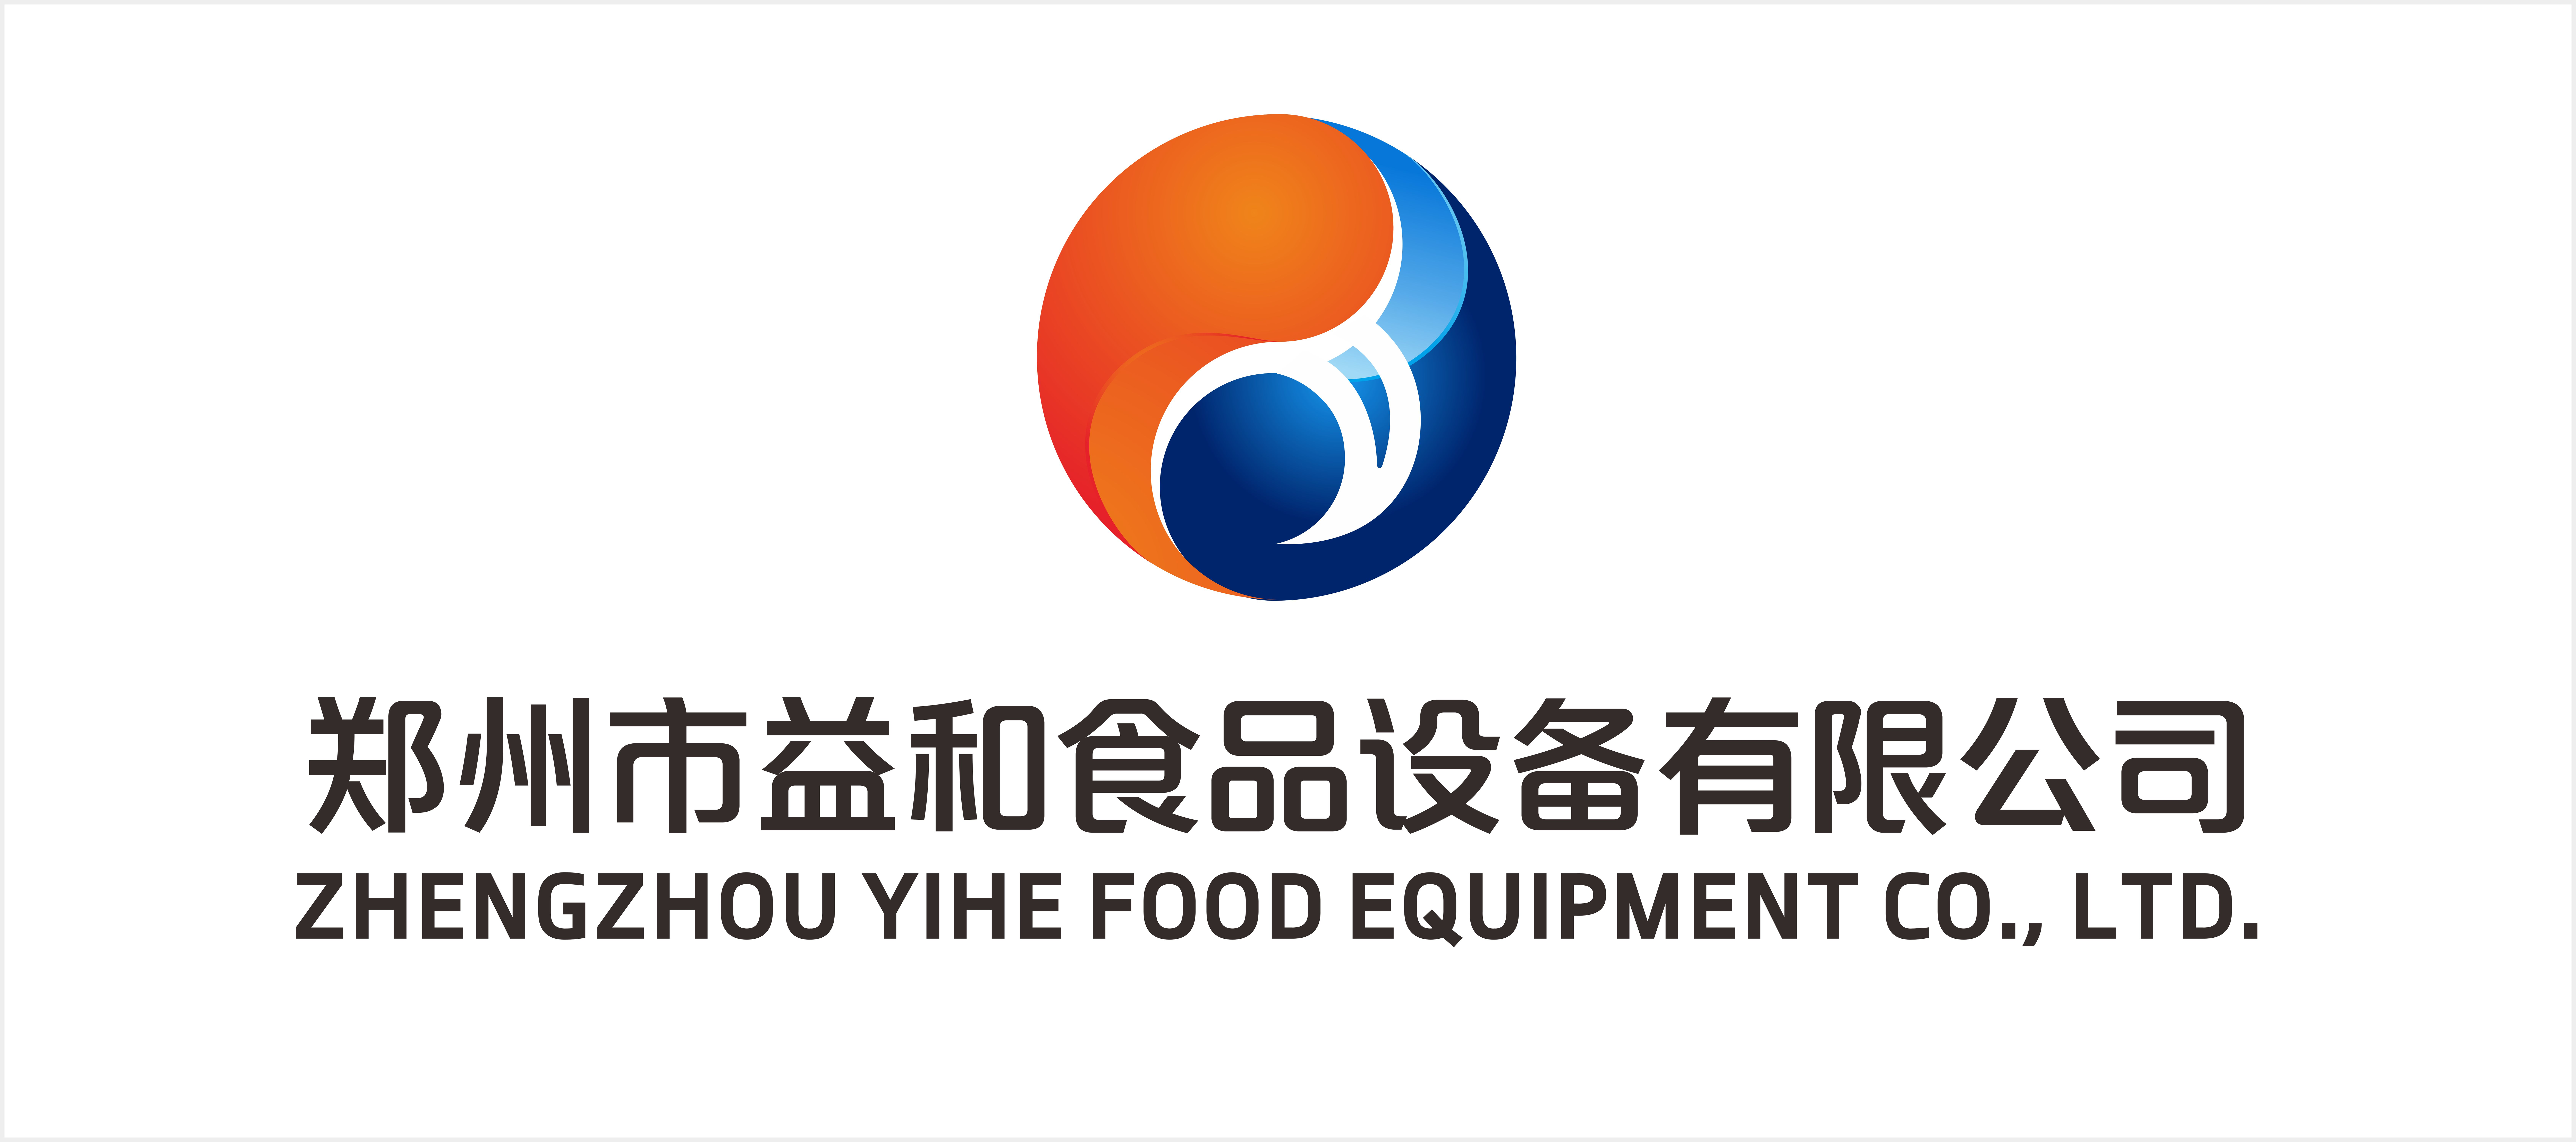 郑州市益和食品设备有限公司